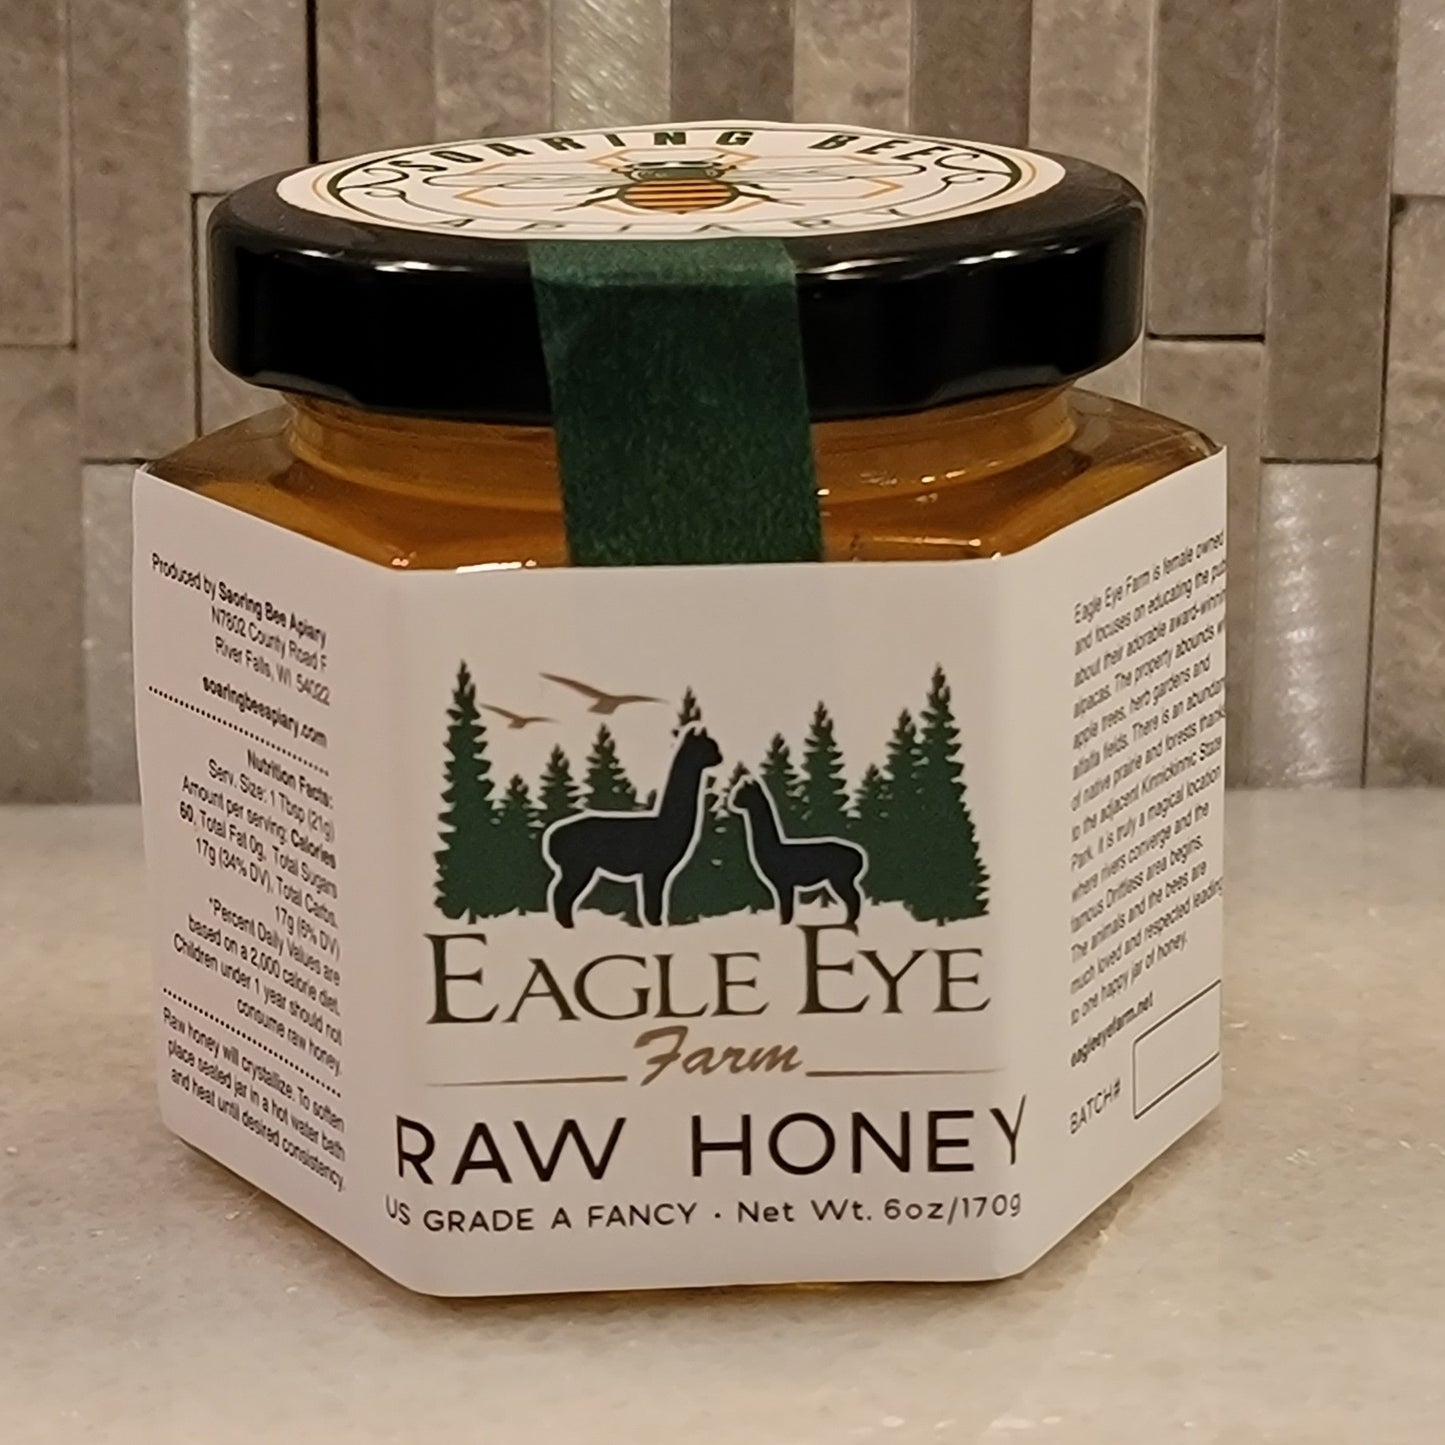 Eagle Eye Farm Honey